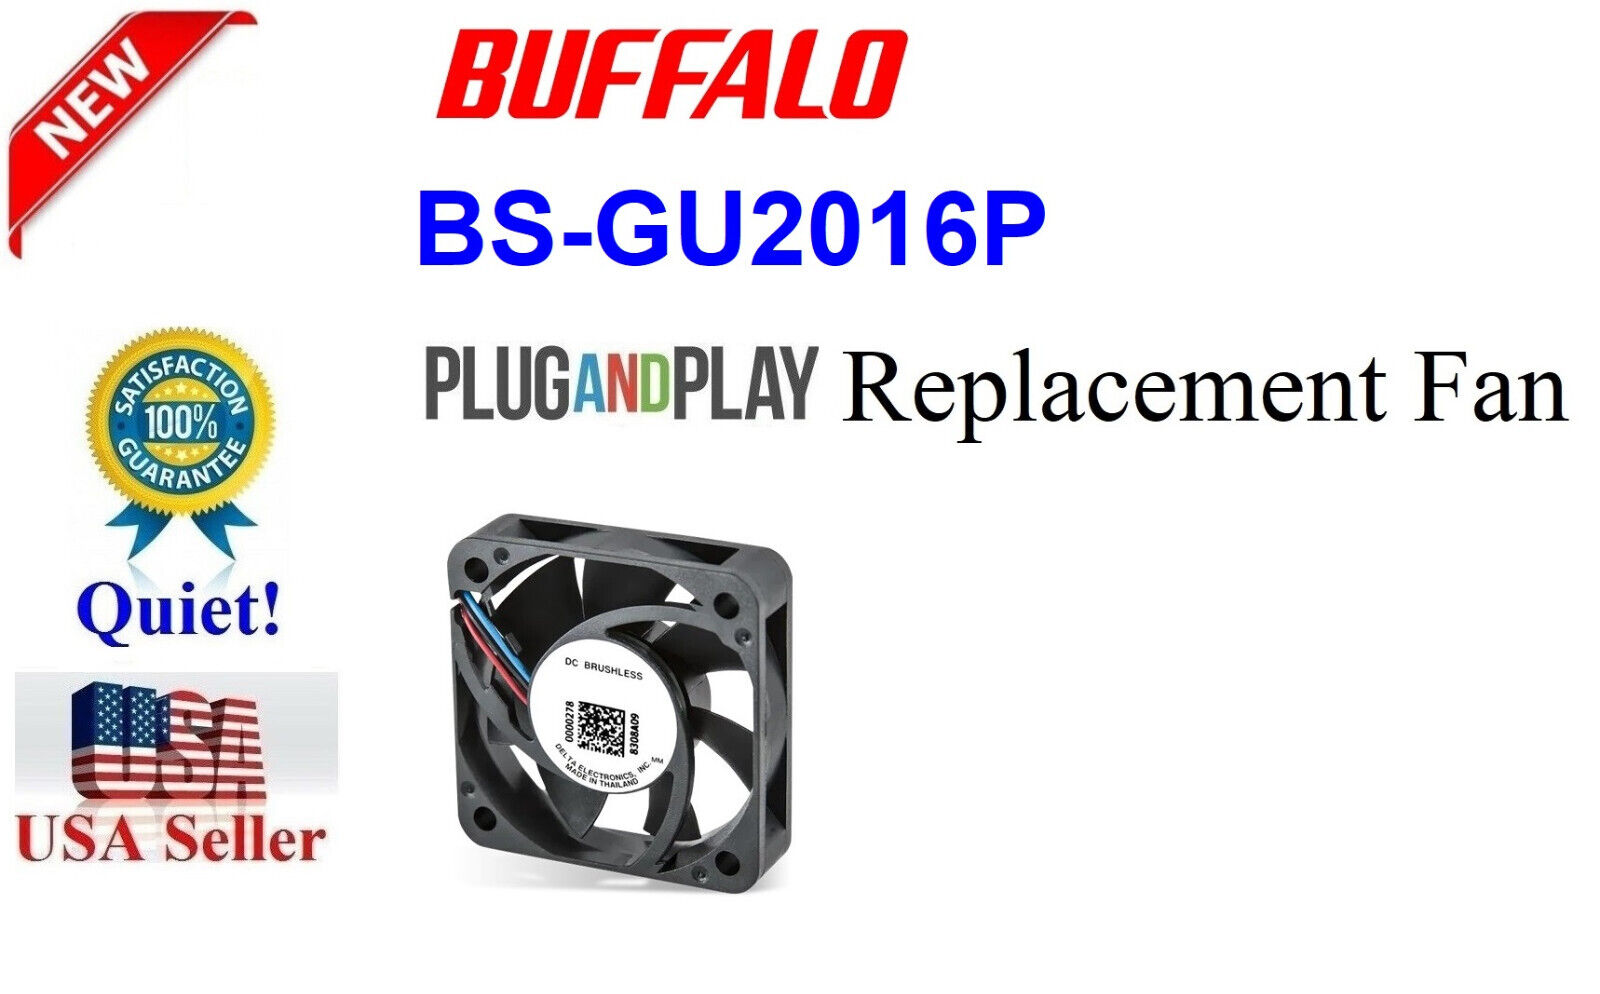 1x*Quiet* Replacement Fan for BS-GU2016P Buffalo Gigabit PoE Switch 